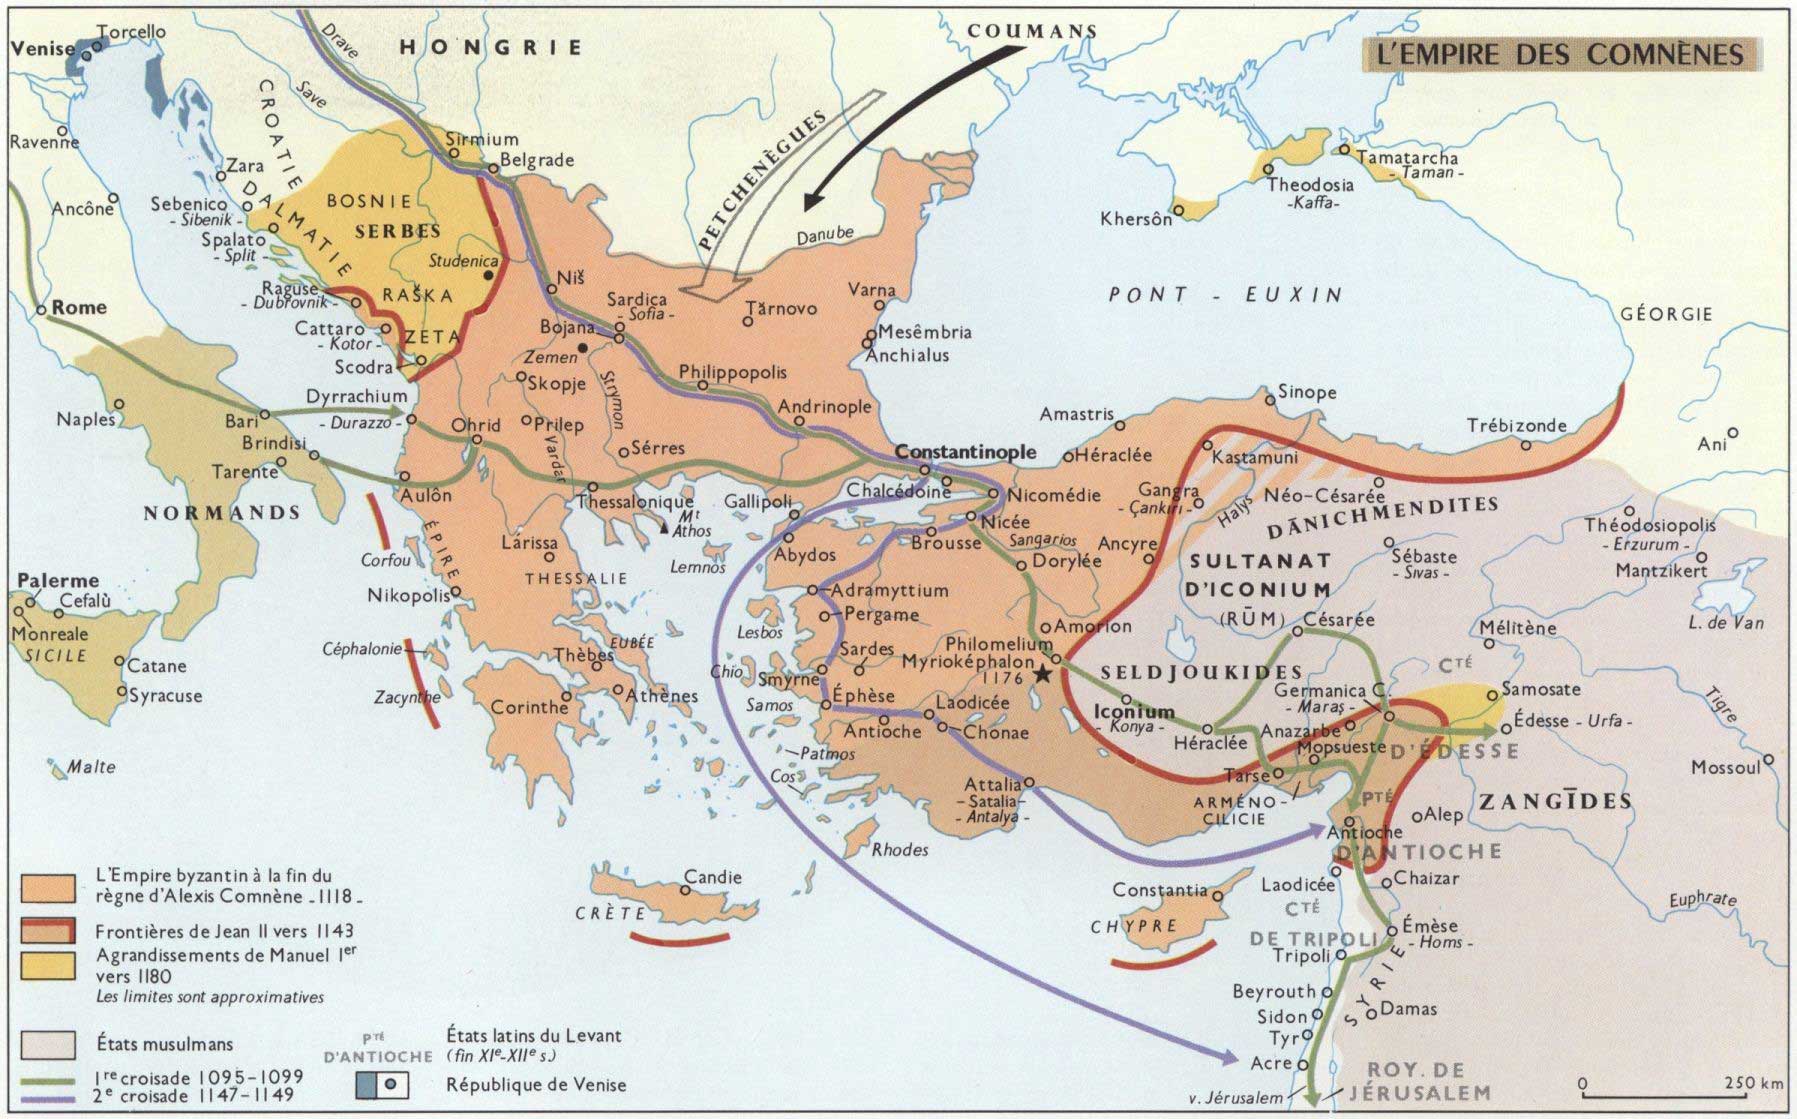 Histoire de l’Empire byzantin (1081 - 1204)